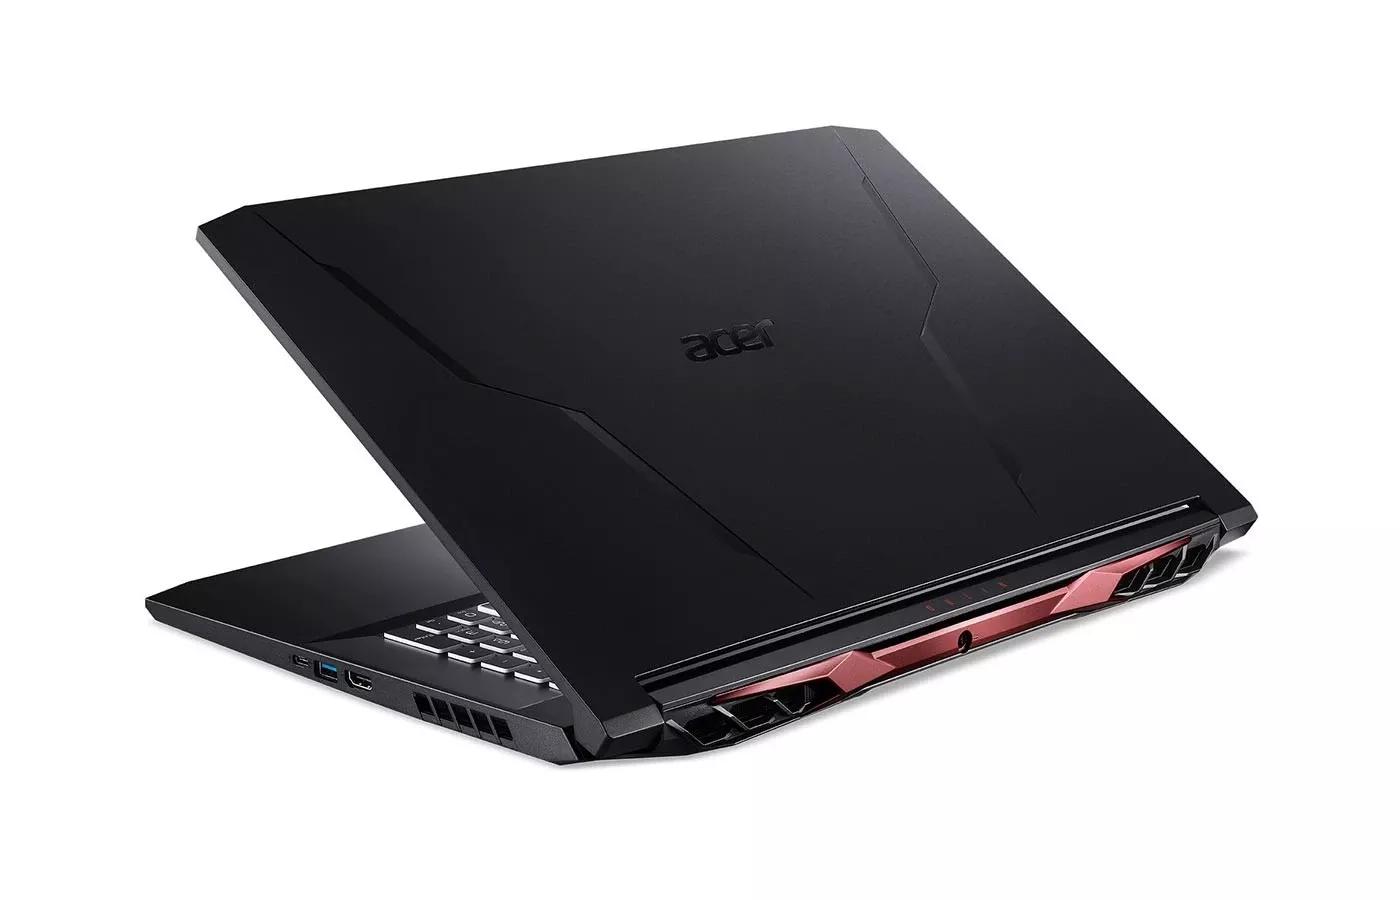 Acer Nitro 5 2021 AMD Ryzen 5 5600H | RTX 3060 | 8GB RAM | 512 SSD | 15.6" FHD 144Hz display | 1 year Warranty